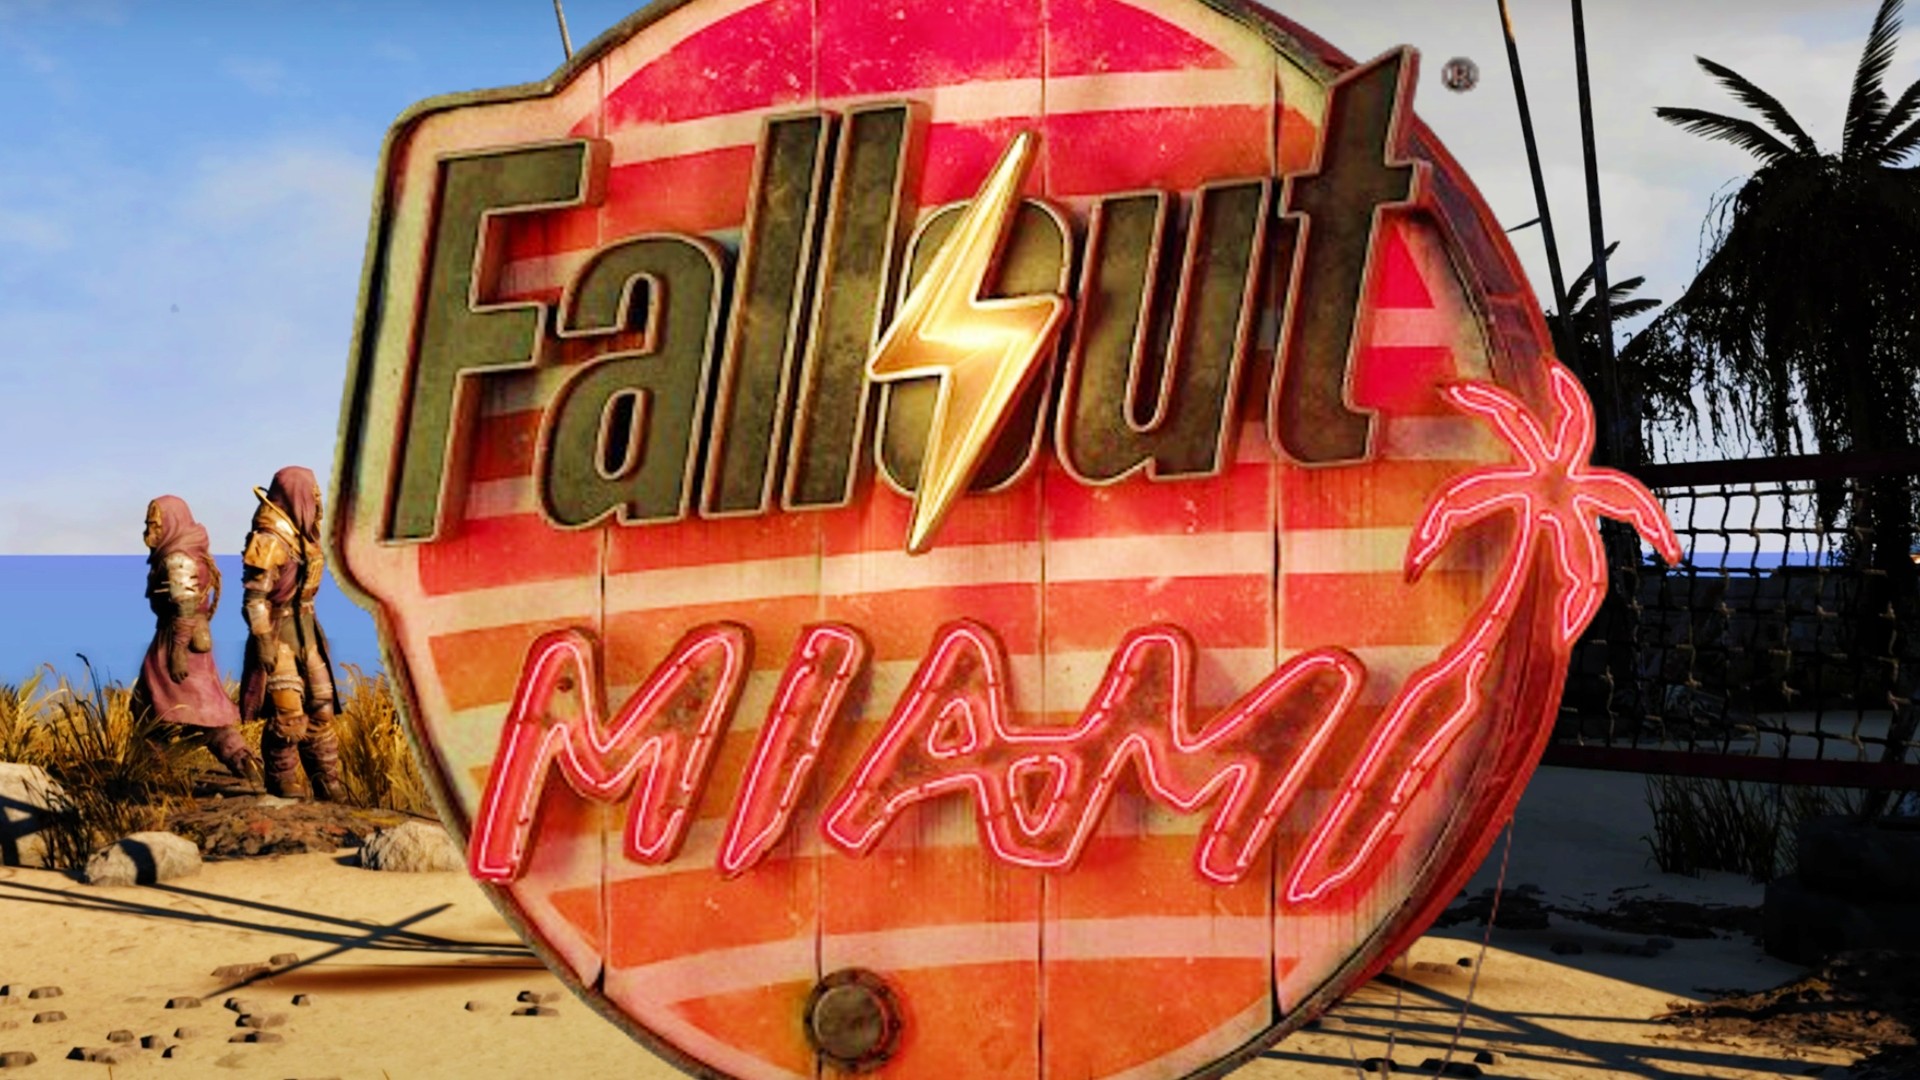 New Fallout game set in Miami showcases gorgeous trailer